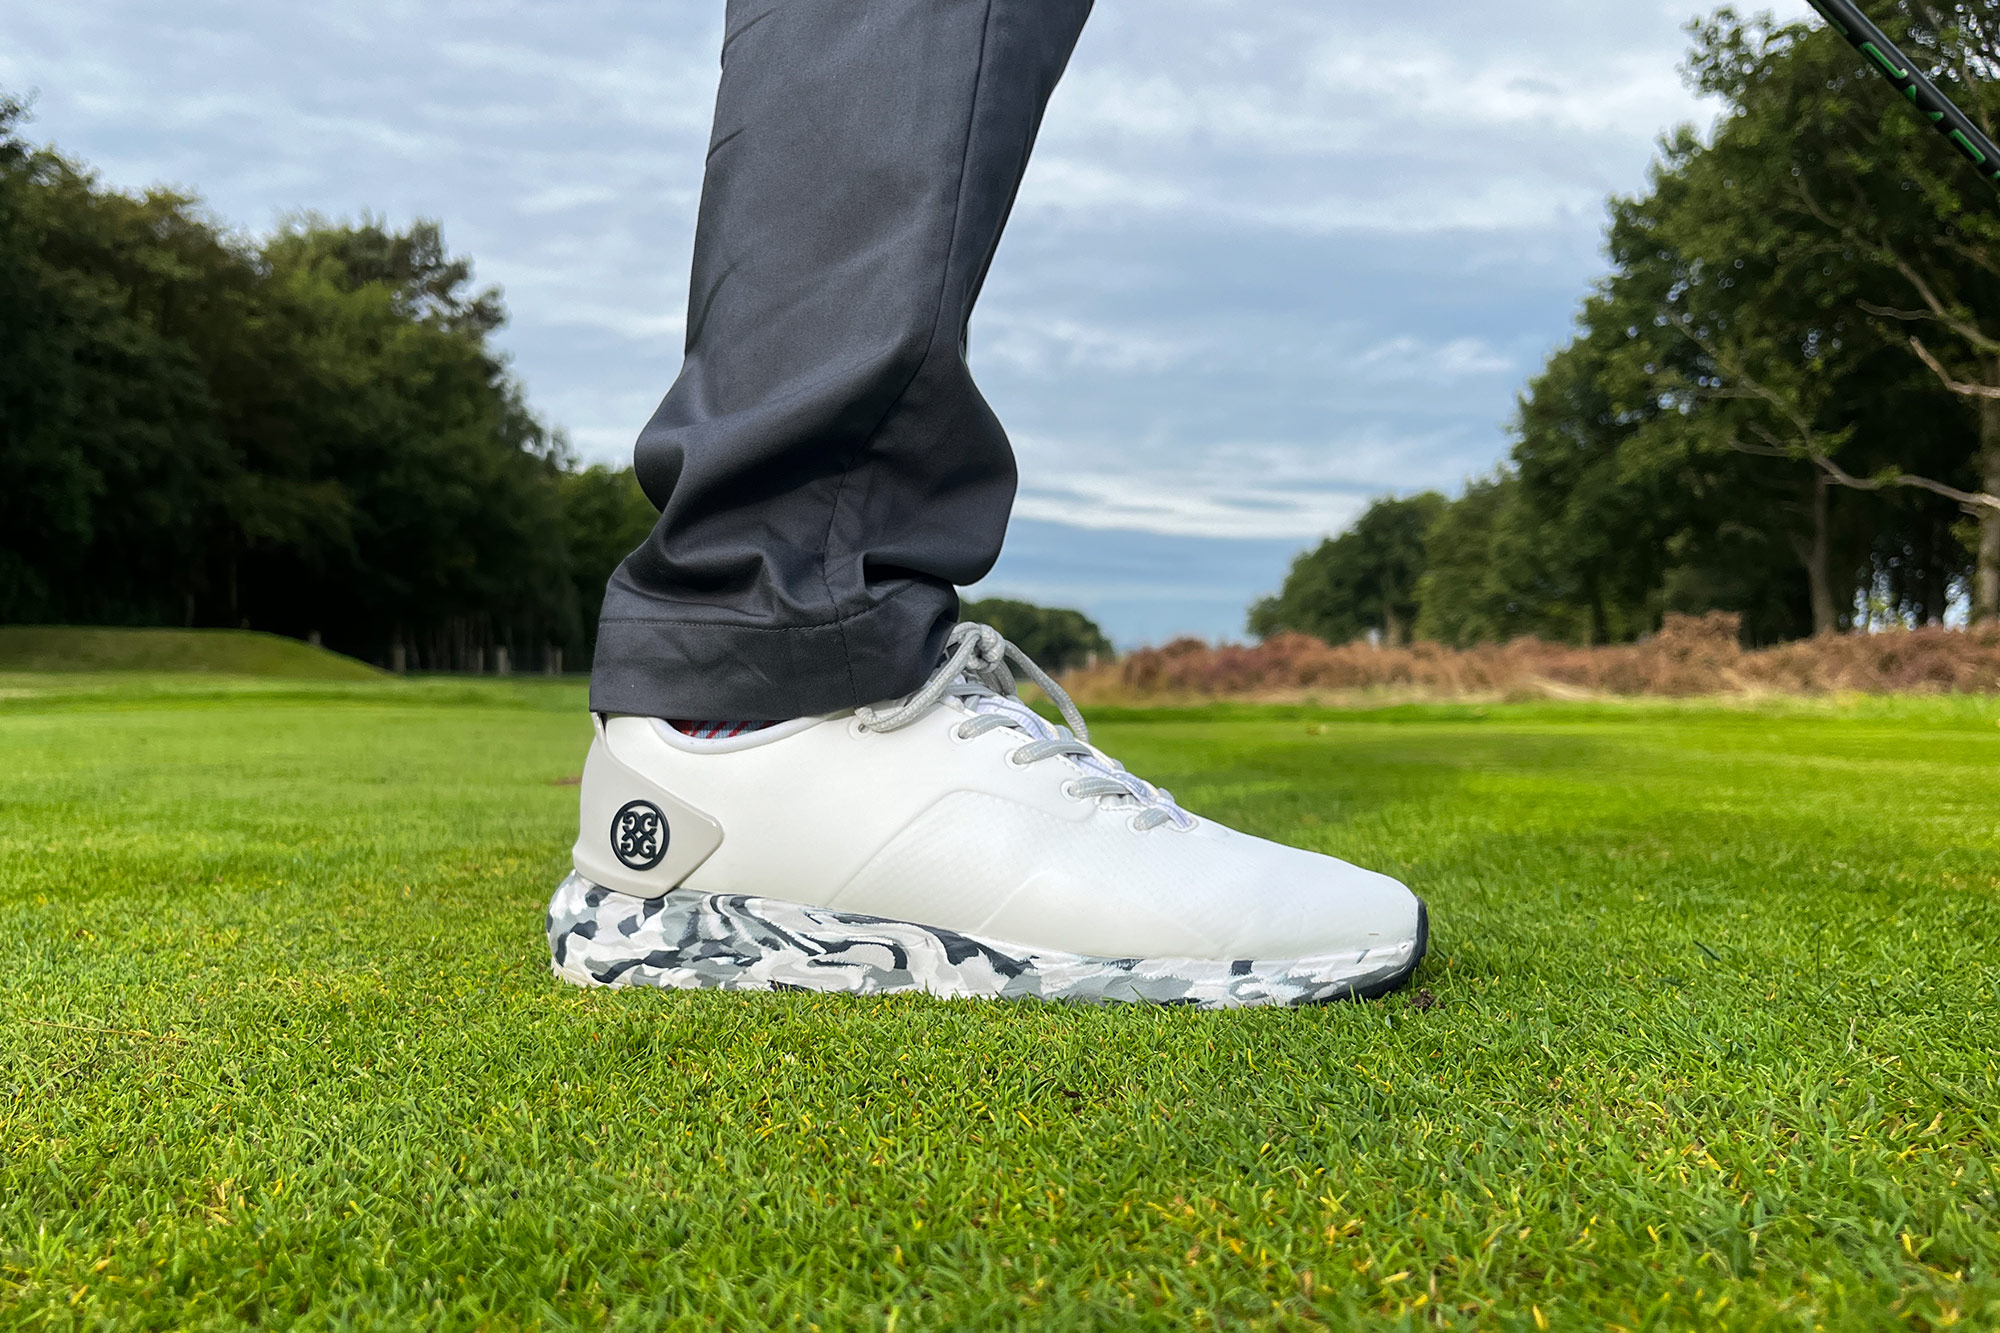 G Fore Camo Gallivanter golf shoes review - National Club Golfer